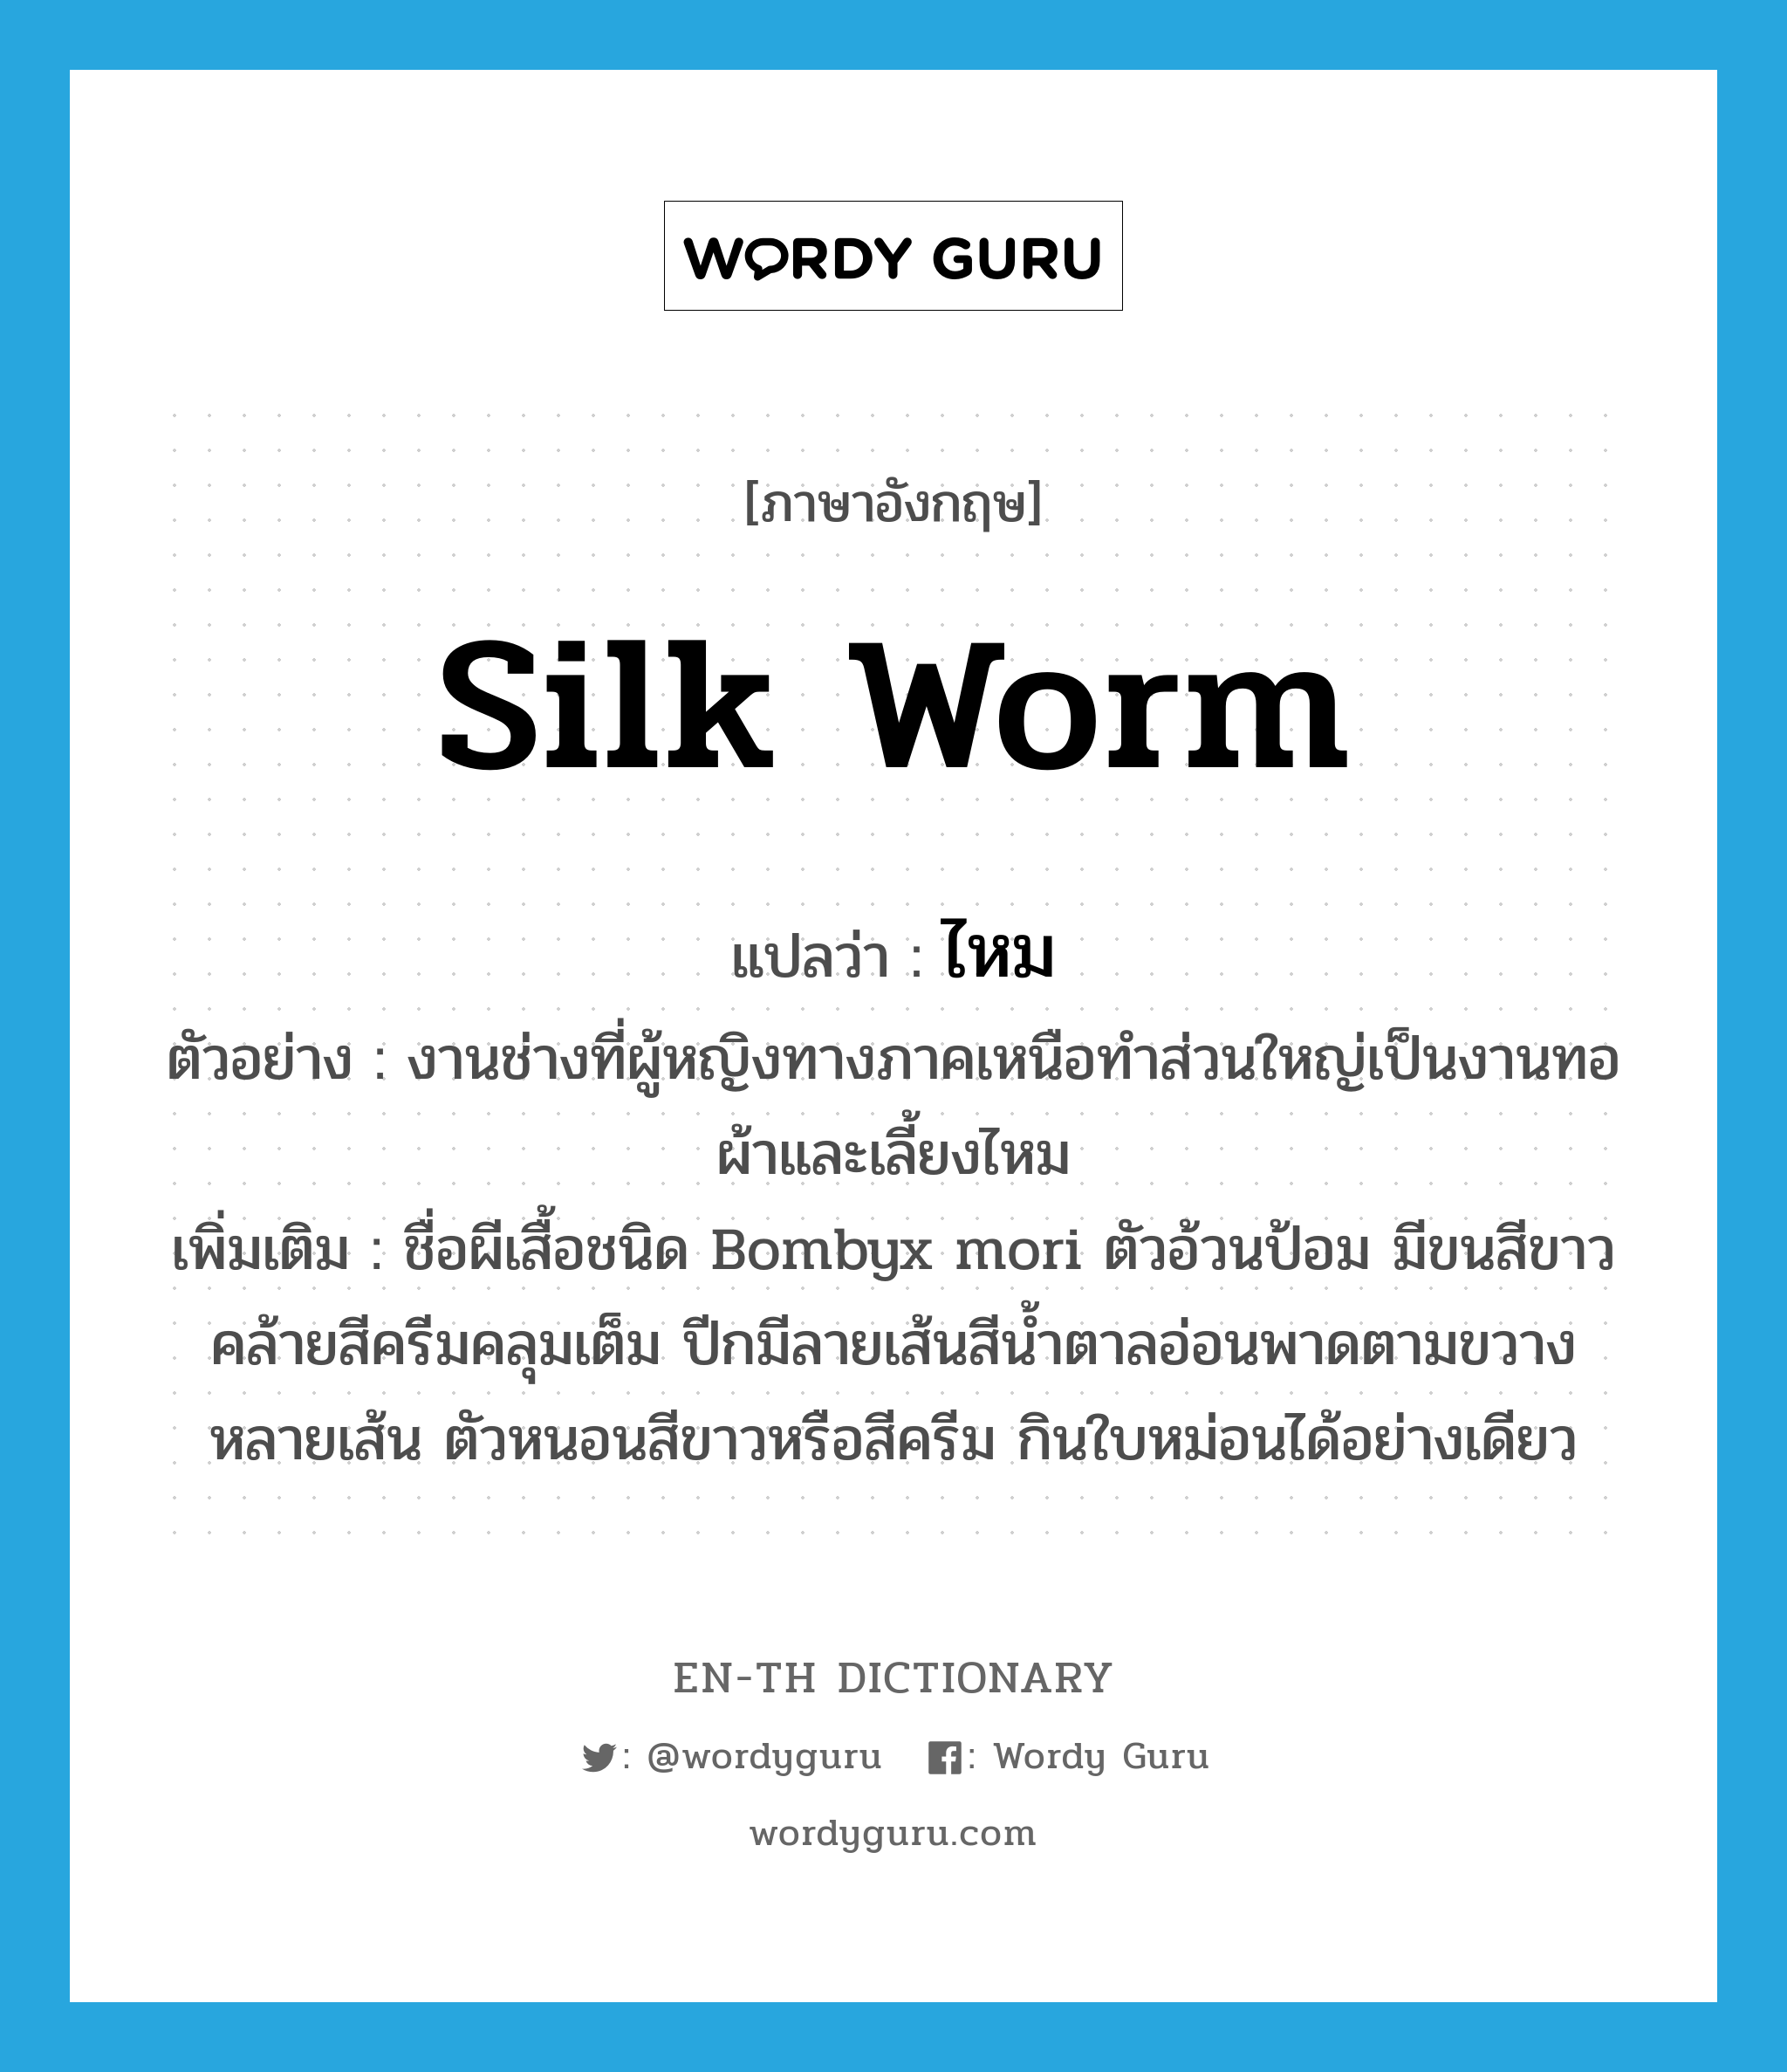 ไหม ภาษาอังกฤษ?, คำศัพท์ภาษาอังกฤษ ไหม แปลว่า silk worm ประเภท N ตัวอย่าง งานช่างที่ผู้หญิงทางภาคเหนือทำส่วนใหญ่เป็นงานทอผ้าและเลี้ยงไหม เพิ่มเติม ชื่อผีเสื้อชนิด Bombyx mori ตัวอ้วนป้อม มีขนสีขาวคล้ายสีครีมคลุมเต็ม ปีกมีลายเส้นสีน้ำตาลอ่อนพาดตามขวางหลายเส้น ตัวหนอนสีขาวหรือสีครีม กินใบหม่อนได้อย่างเดียว หมวด N